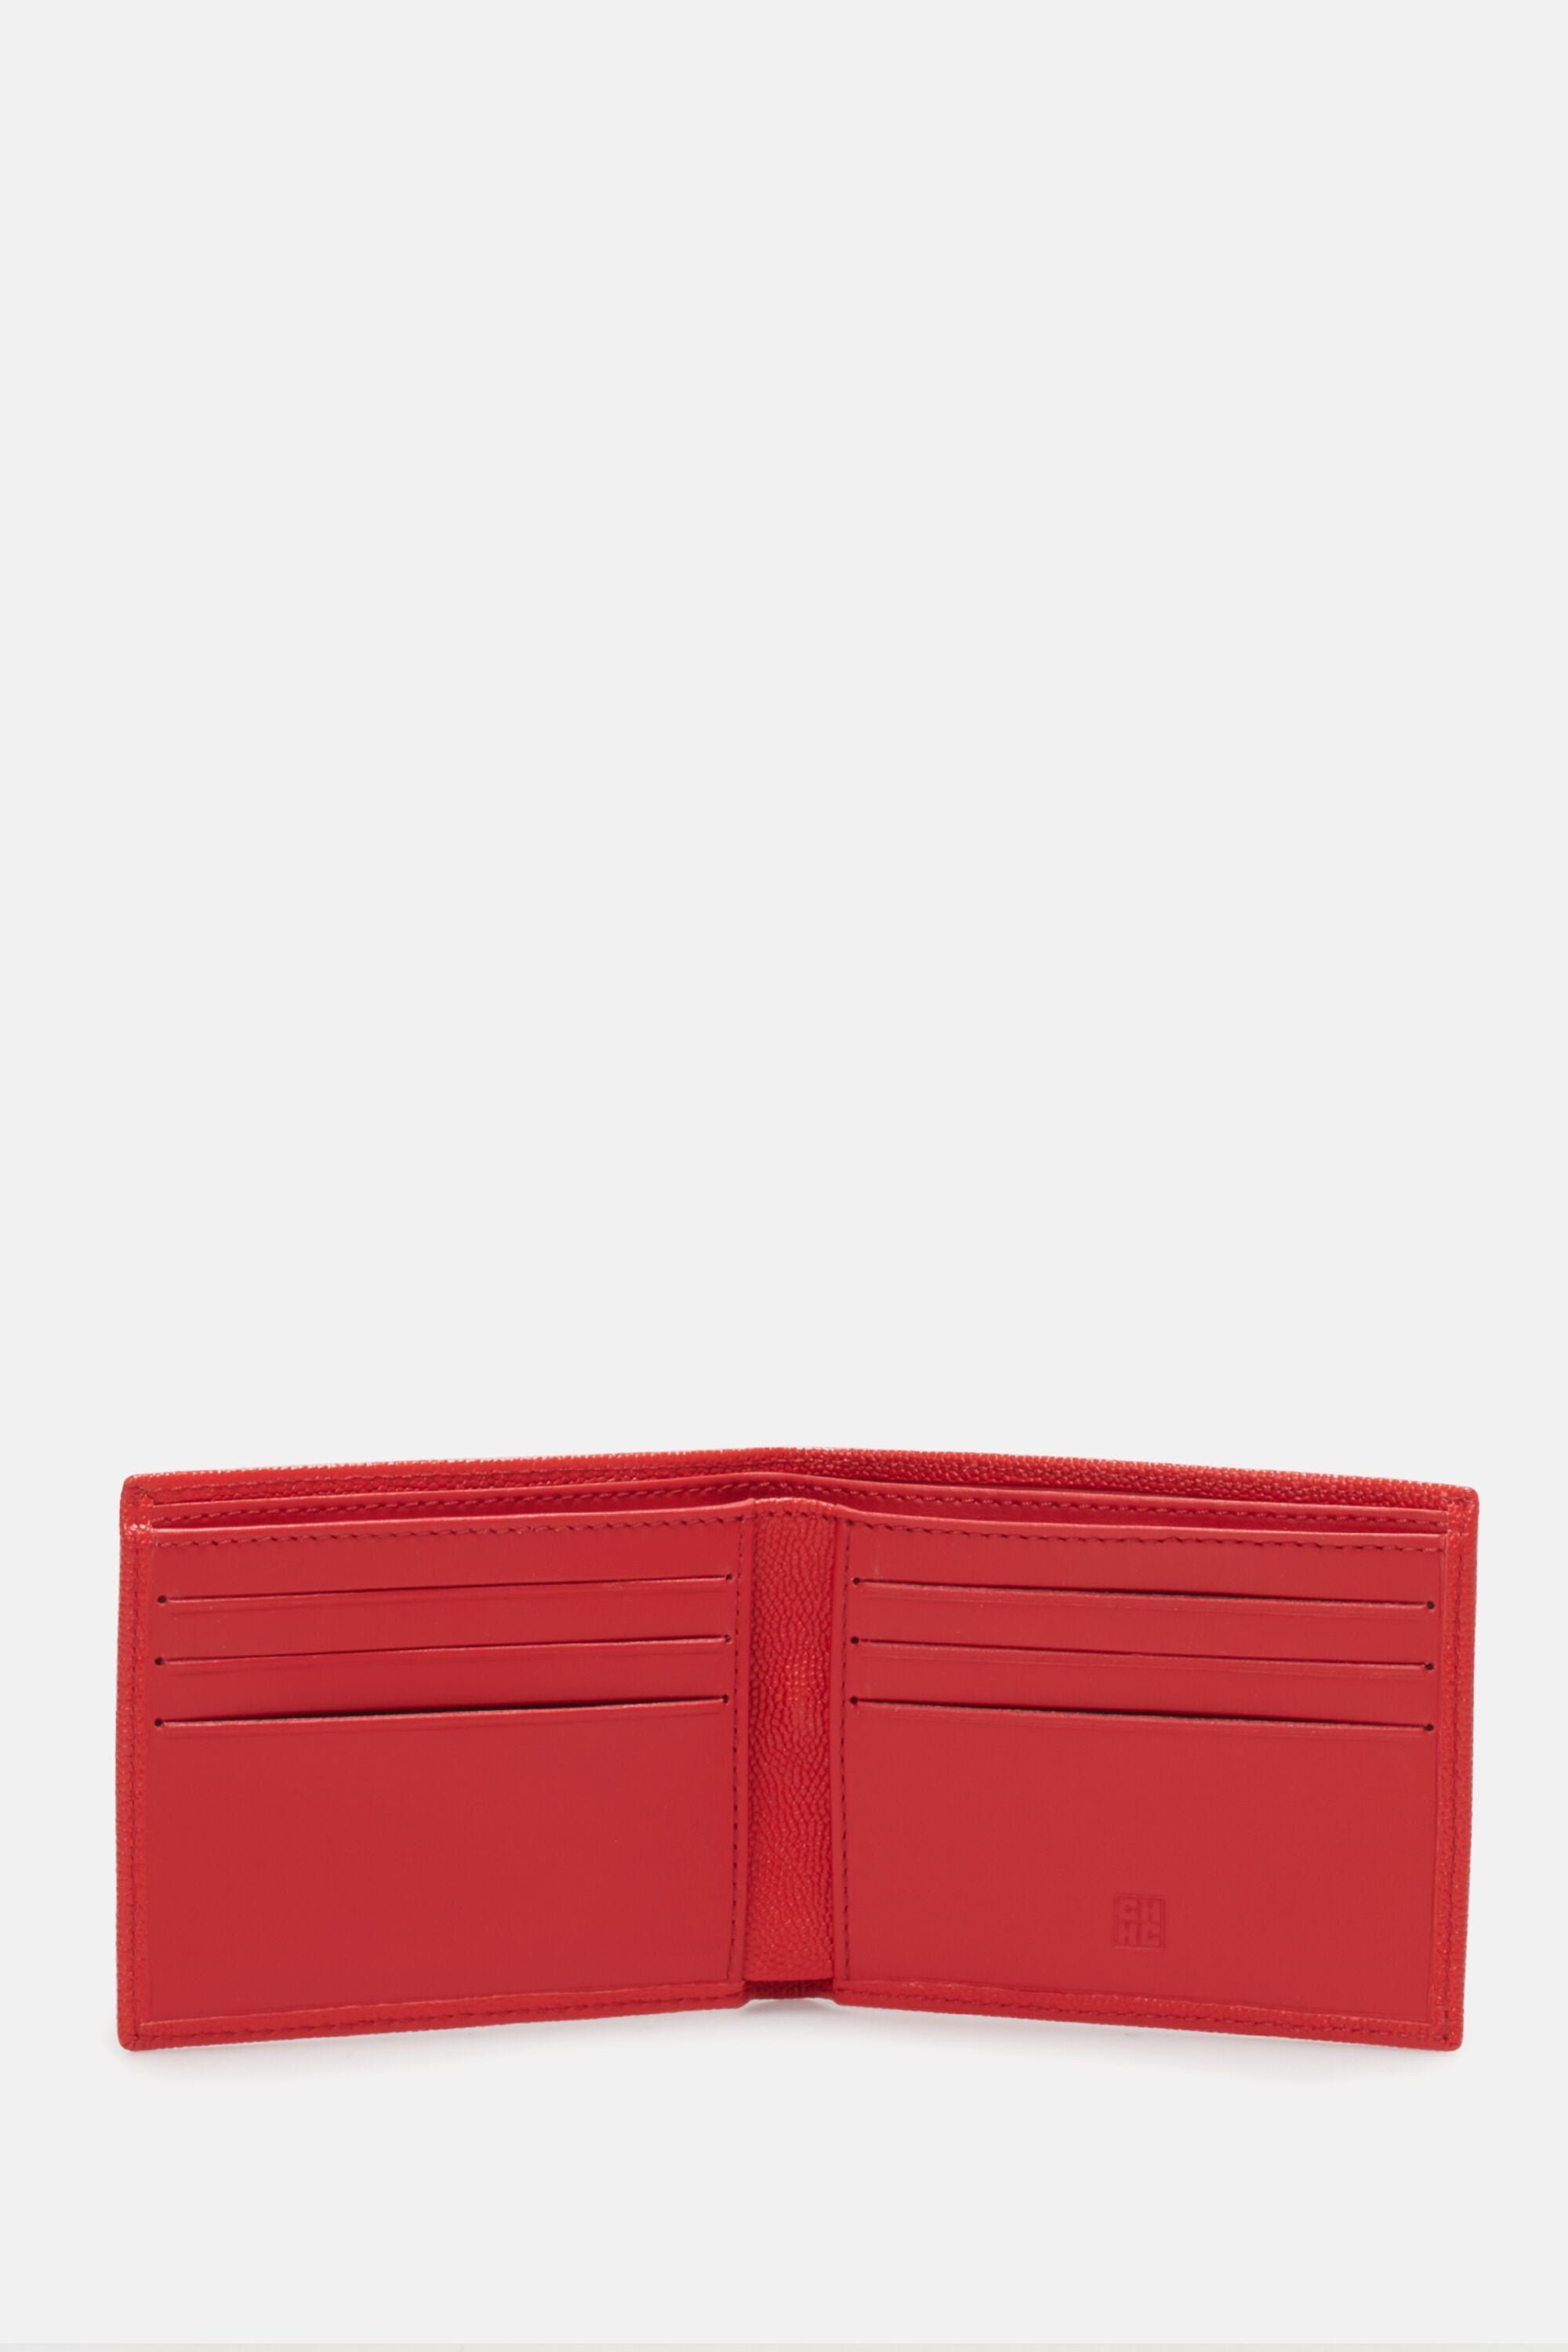 Bimba  Billfold 6 wallet red - CH Carolina Herrera France